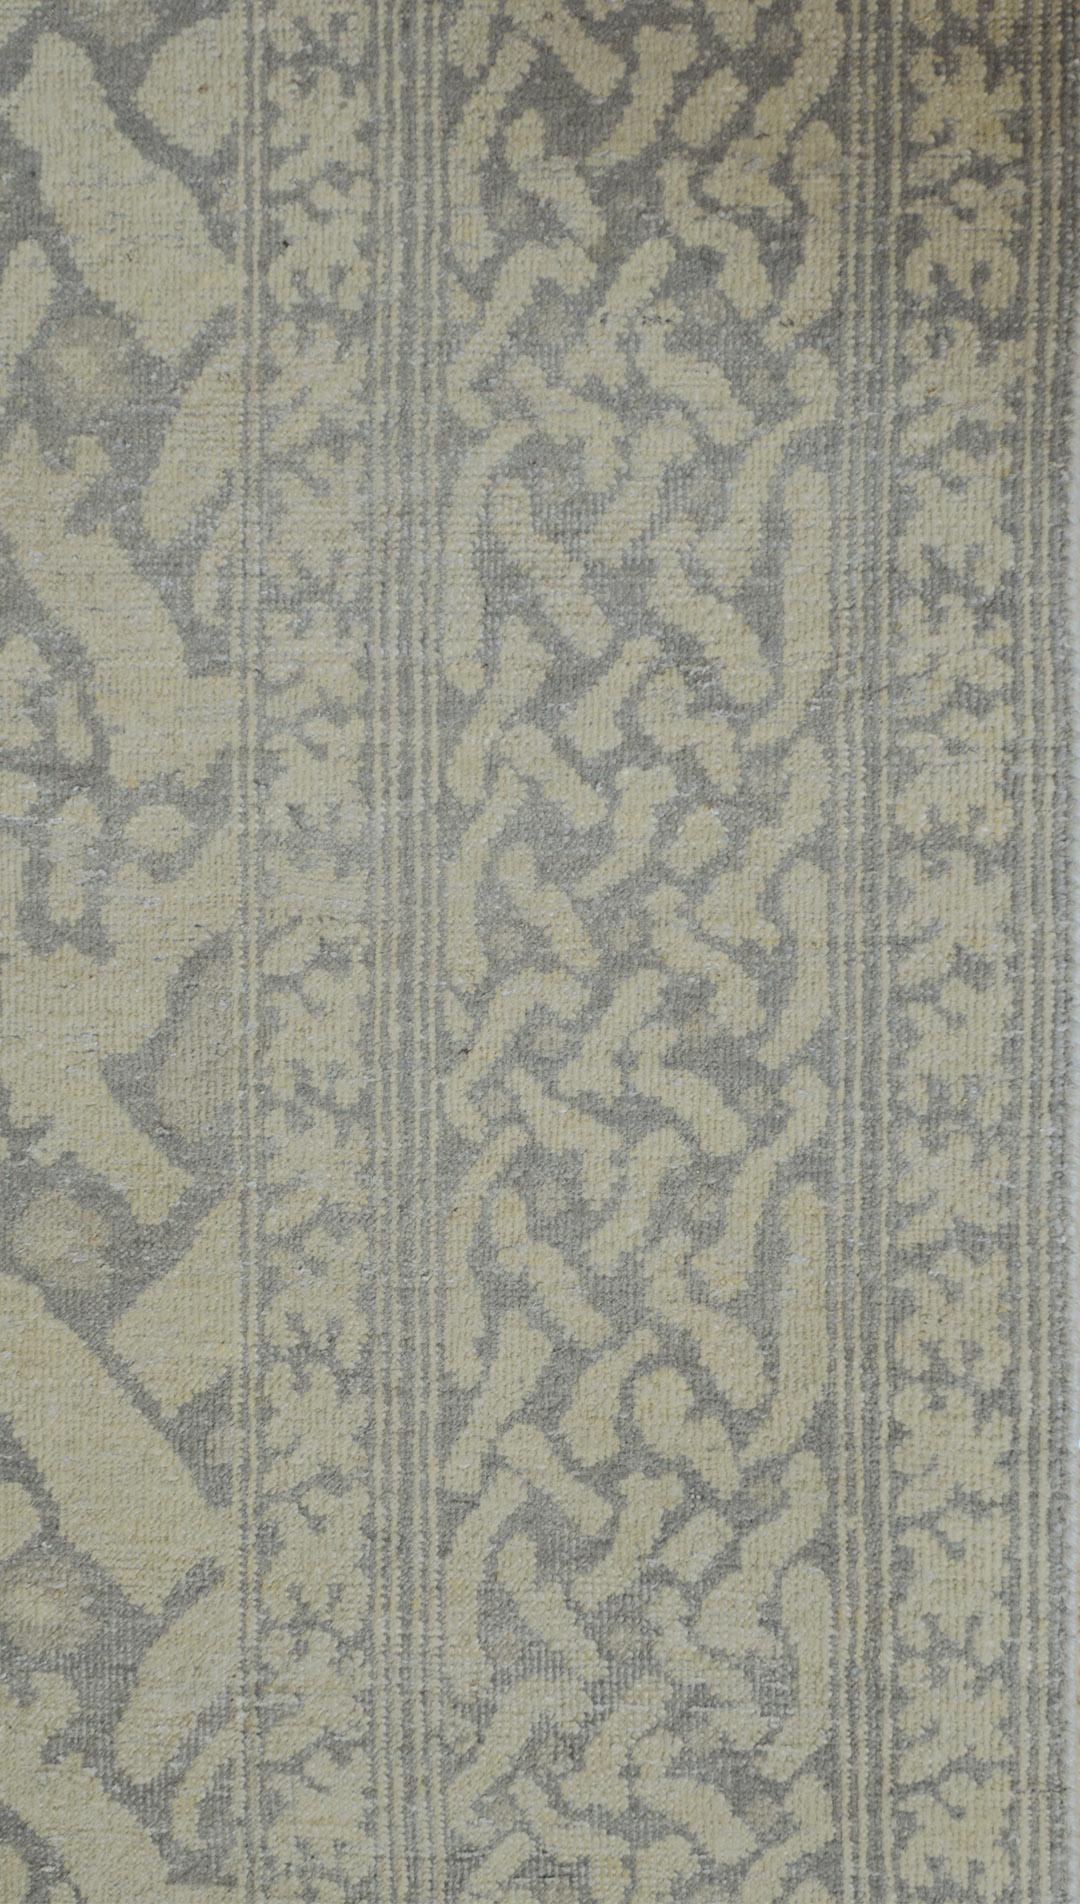 Dieser wunderschöne Teppich wurde in Kaschmir von Hand gewebt und zeichnet sich durch ein einzigartiges Design und eine außergewöhnlich feine Webart aus. Flor aus 100% natürlicher Wolle. Brandneu.